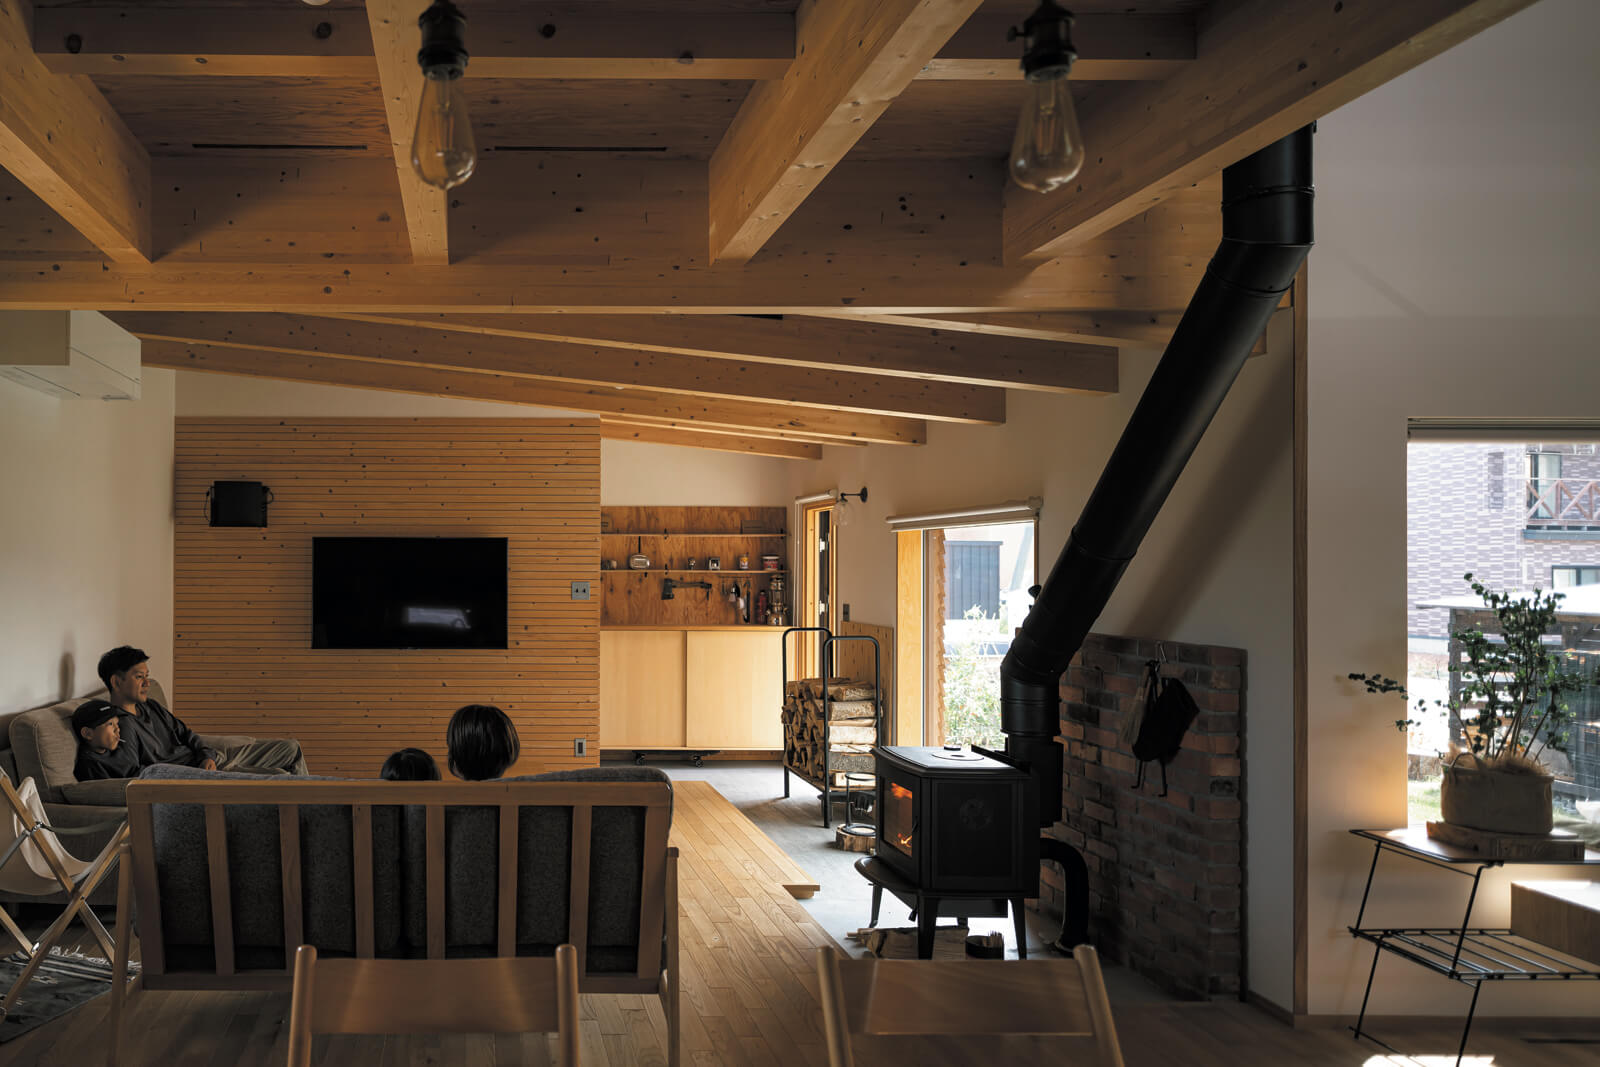 合板の現し天井や無垢床など、木質感のある室内空間に「ロッジ風になりすぎないデザインが、私たちの薪ストーブのある家の理想そのもの」と奥さんは笑顔